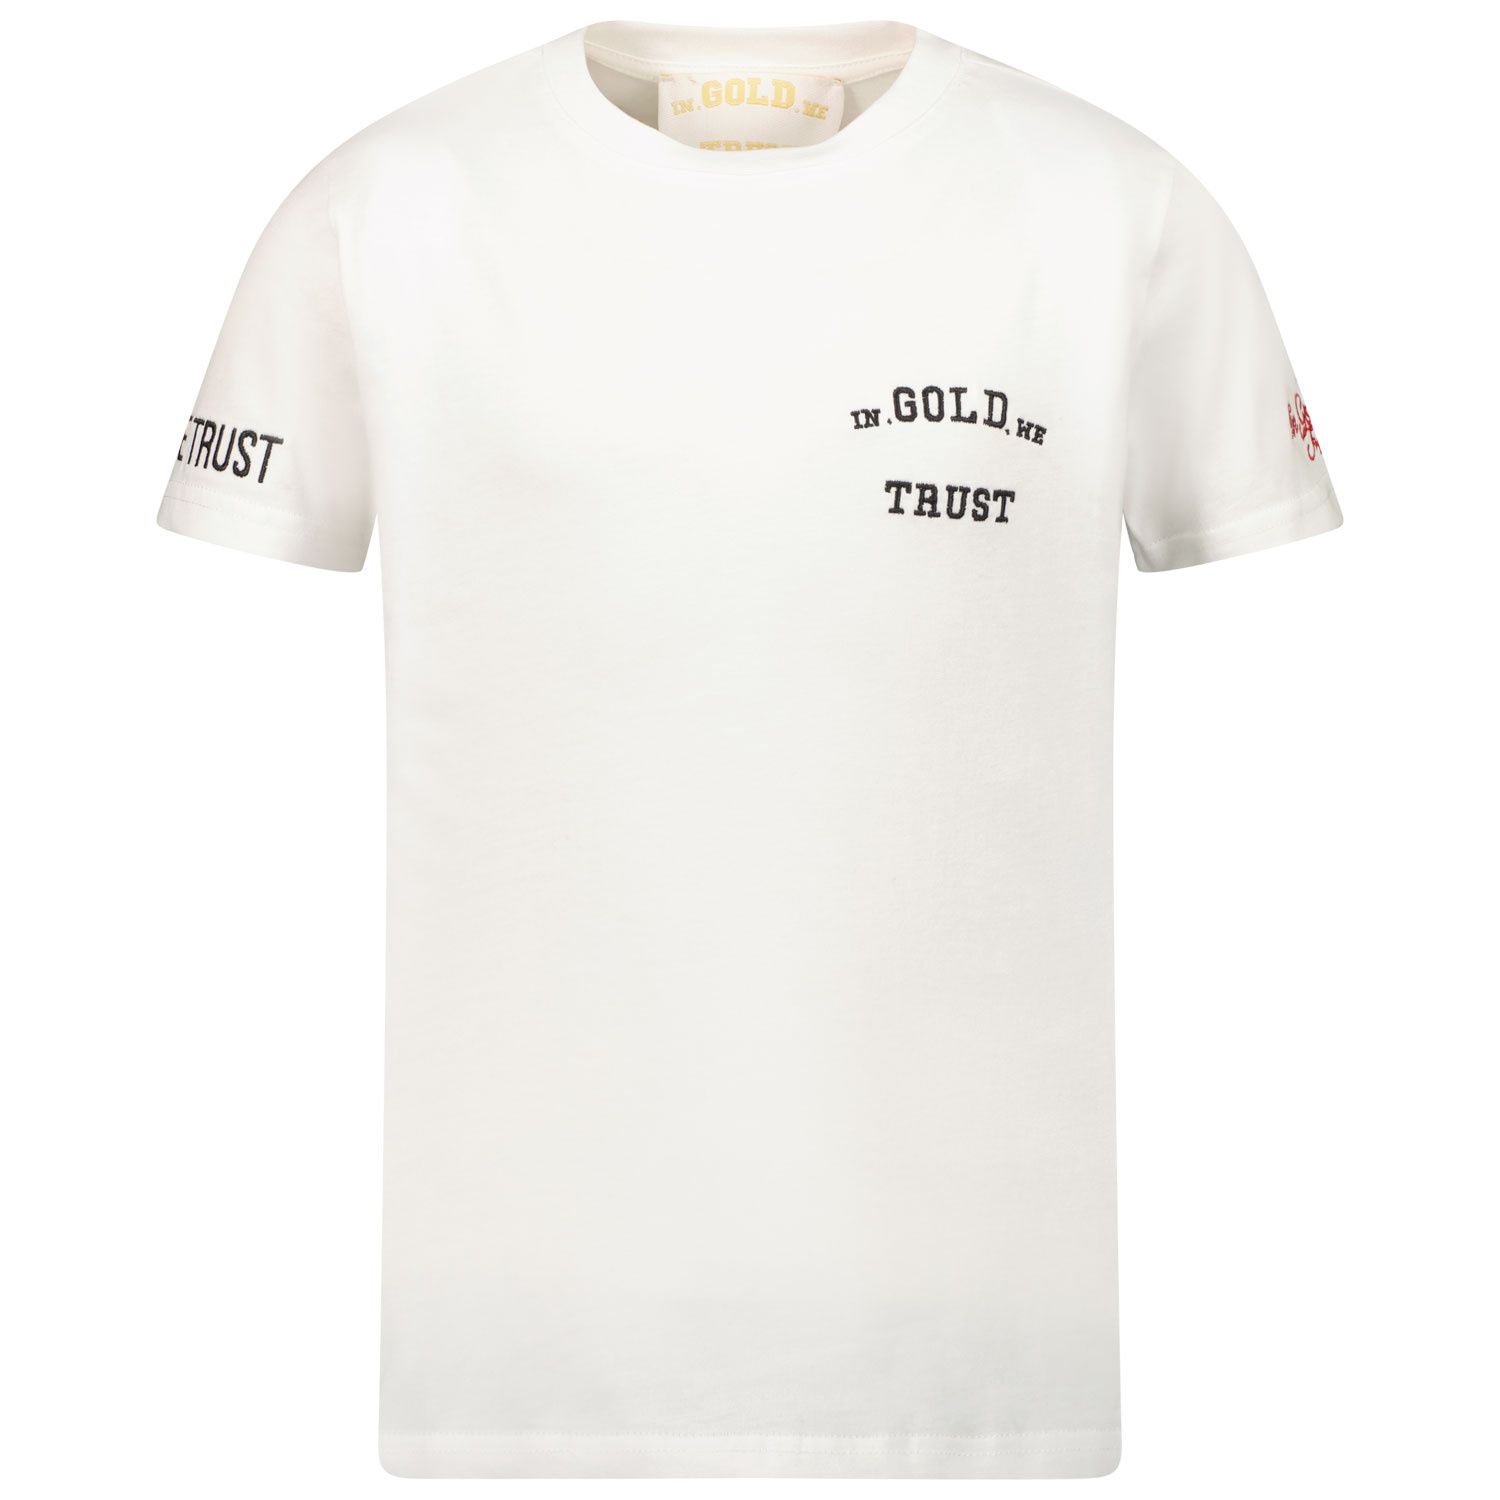 Afbeelding van in Gold We Trust IGWTTKT004 kinder t-shirt wit